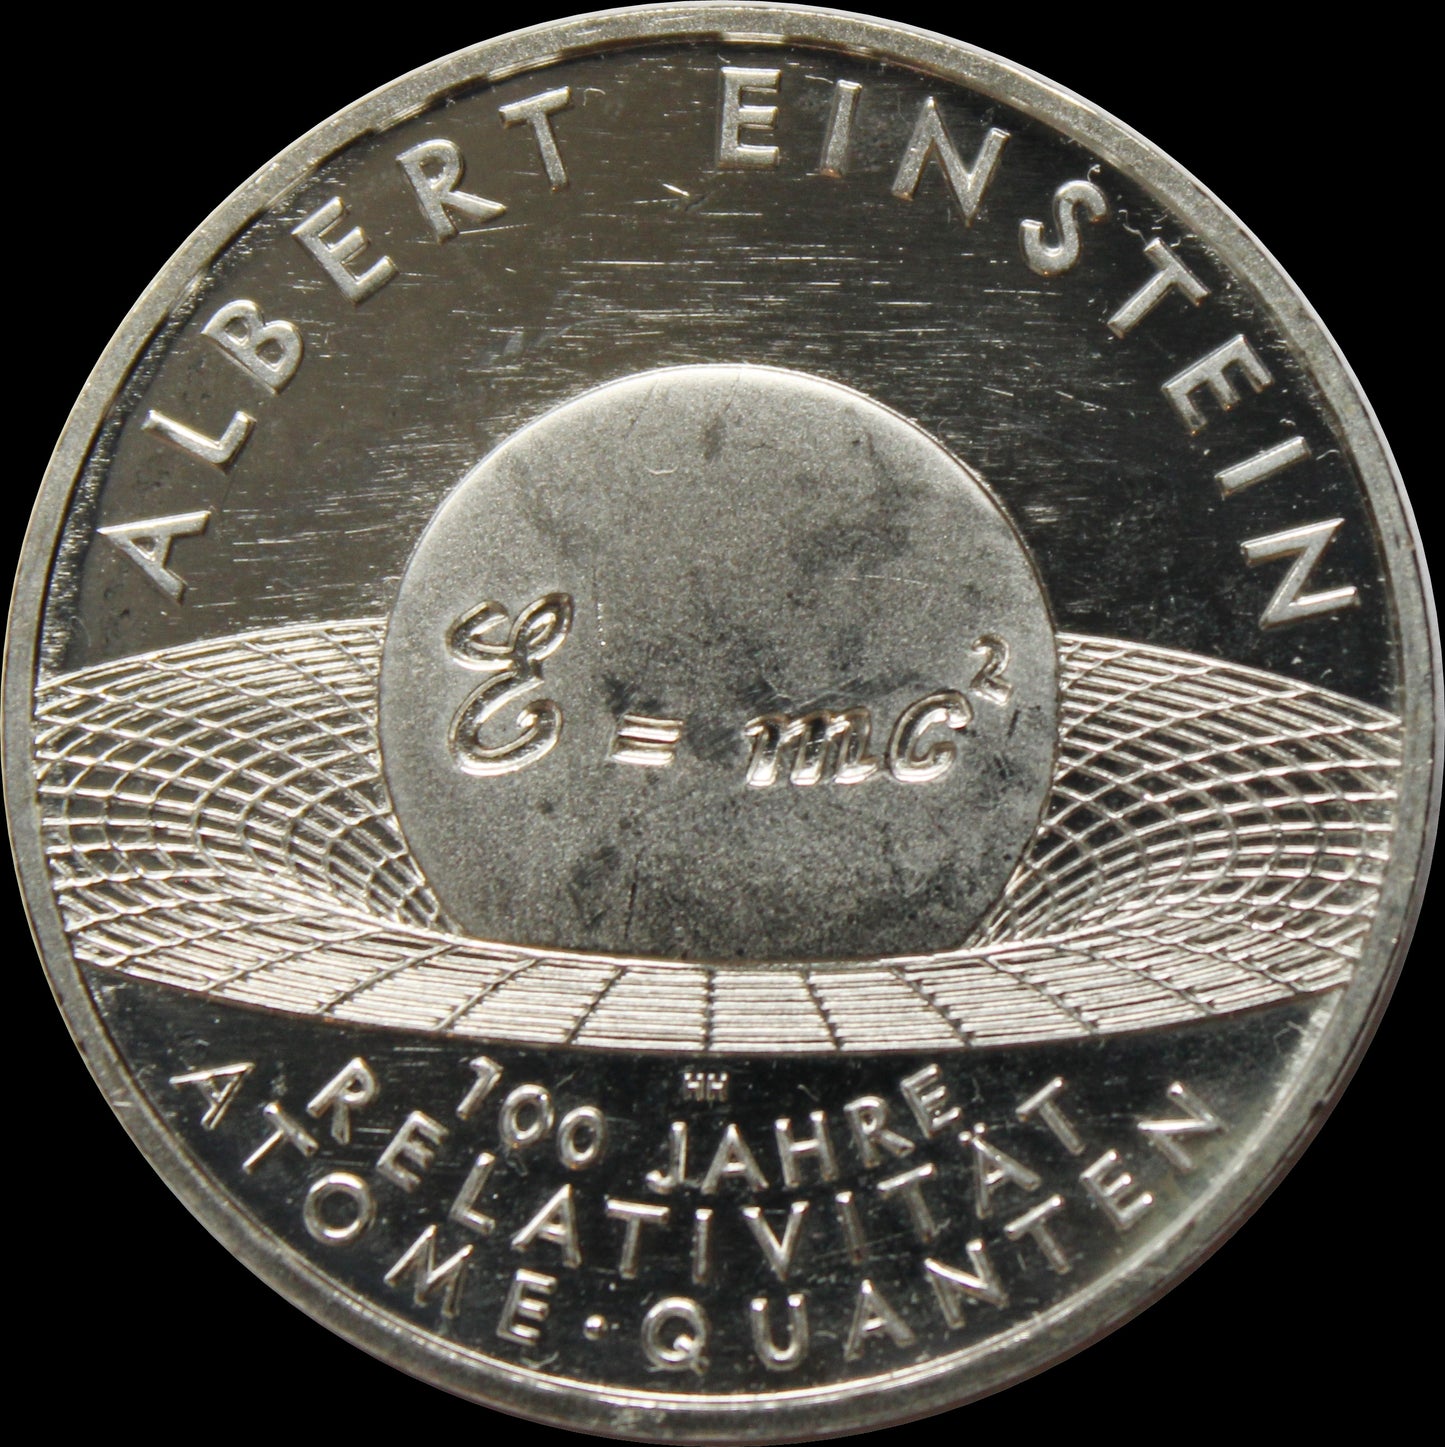 ALBERT EINSTEIN, Serie 10 € Silber Gedenkmünzen Deutschland, Stempelglanz, 2005